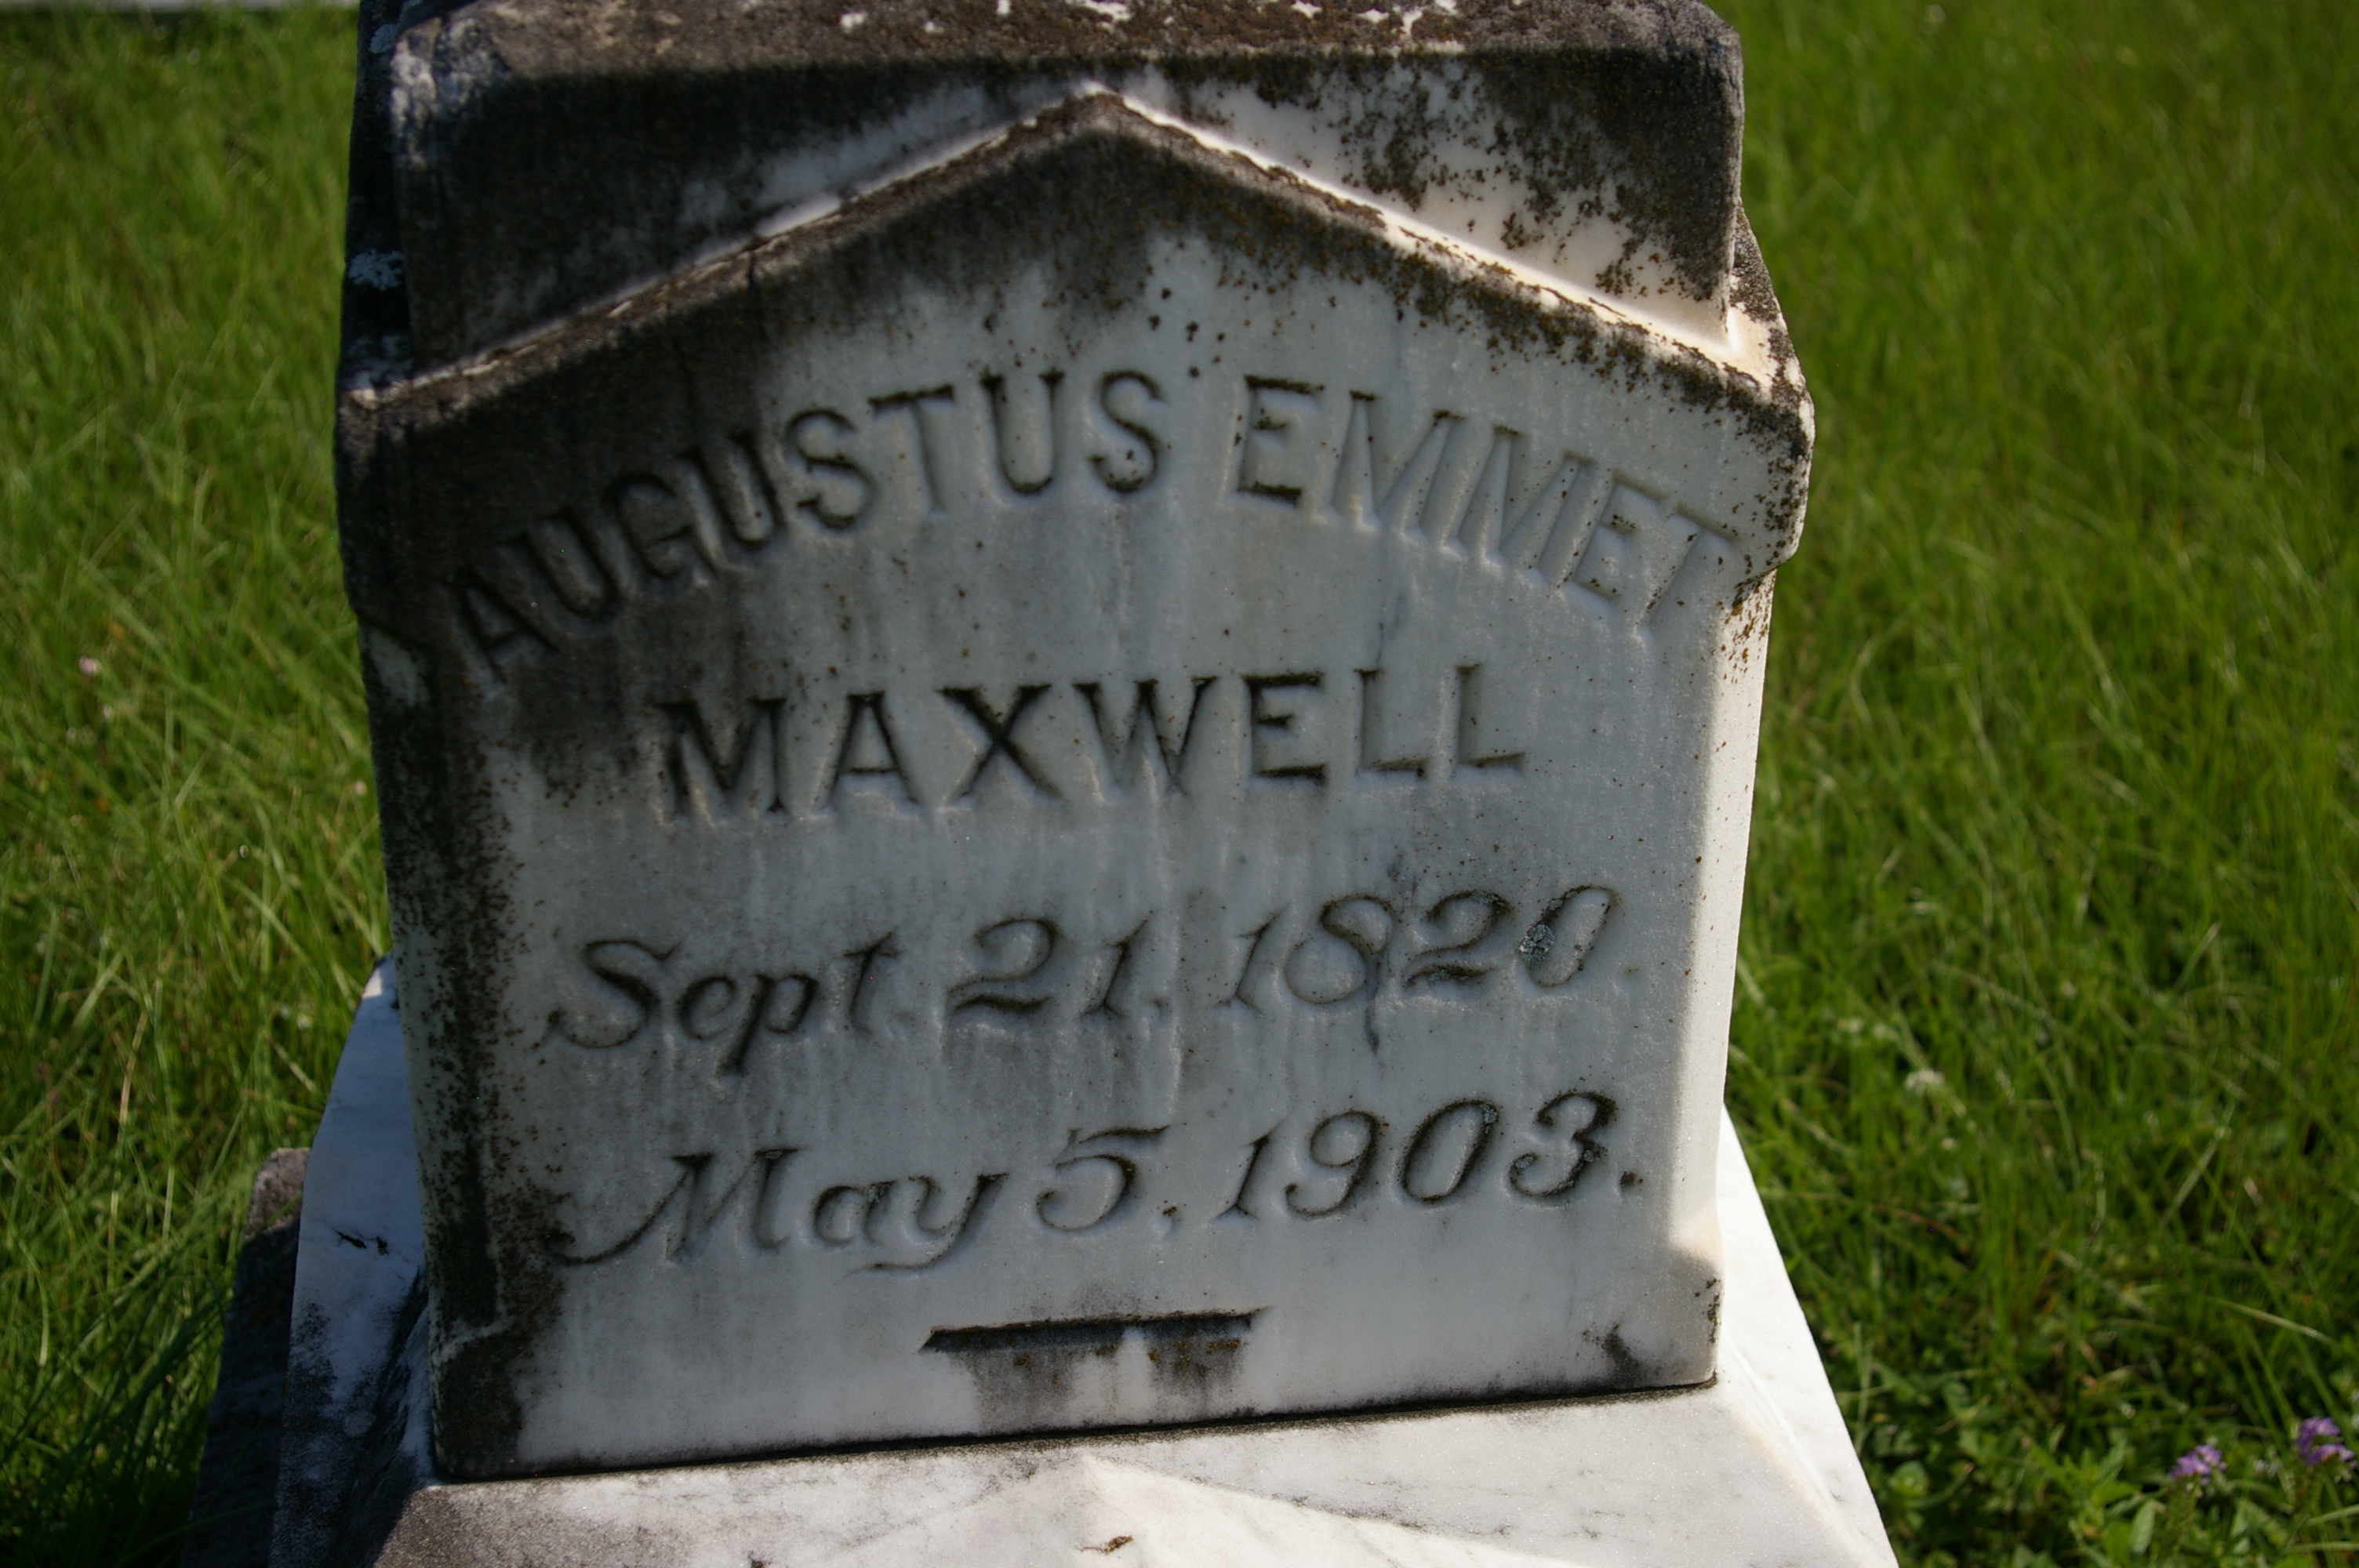 Augustus Emmet Maxwell